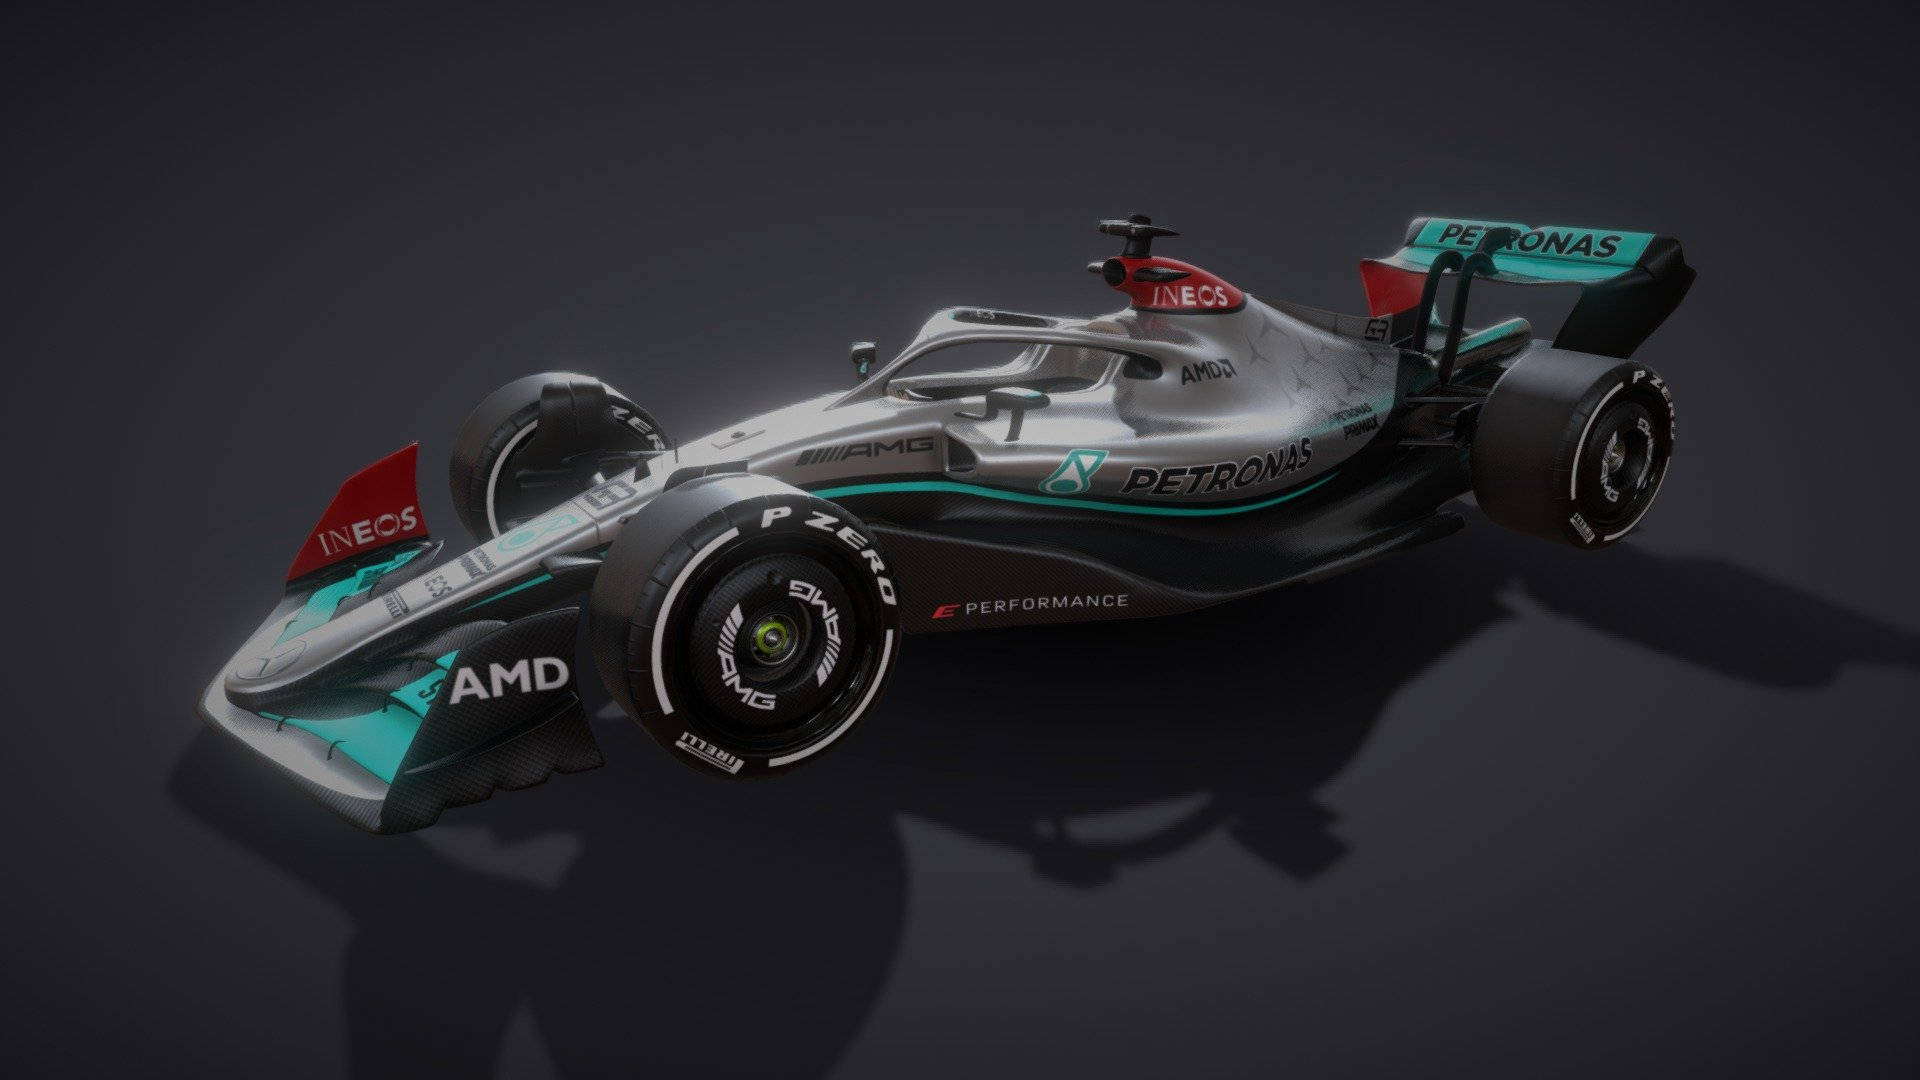 Oplev spændingen ved Formel 1 motorløb med Mercedes F1 iPhone. Wallpaper